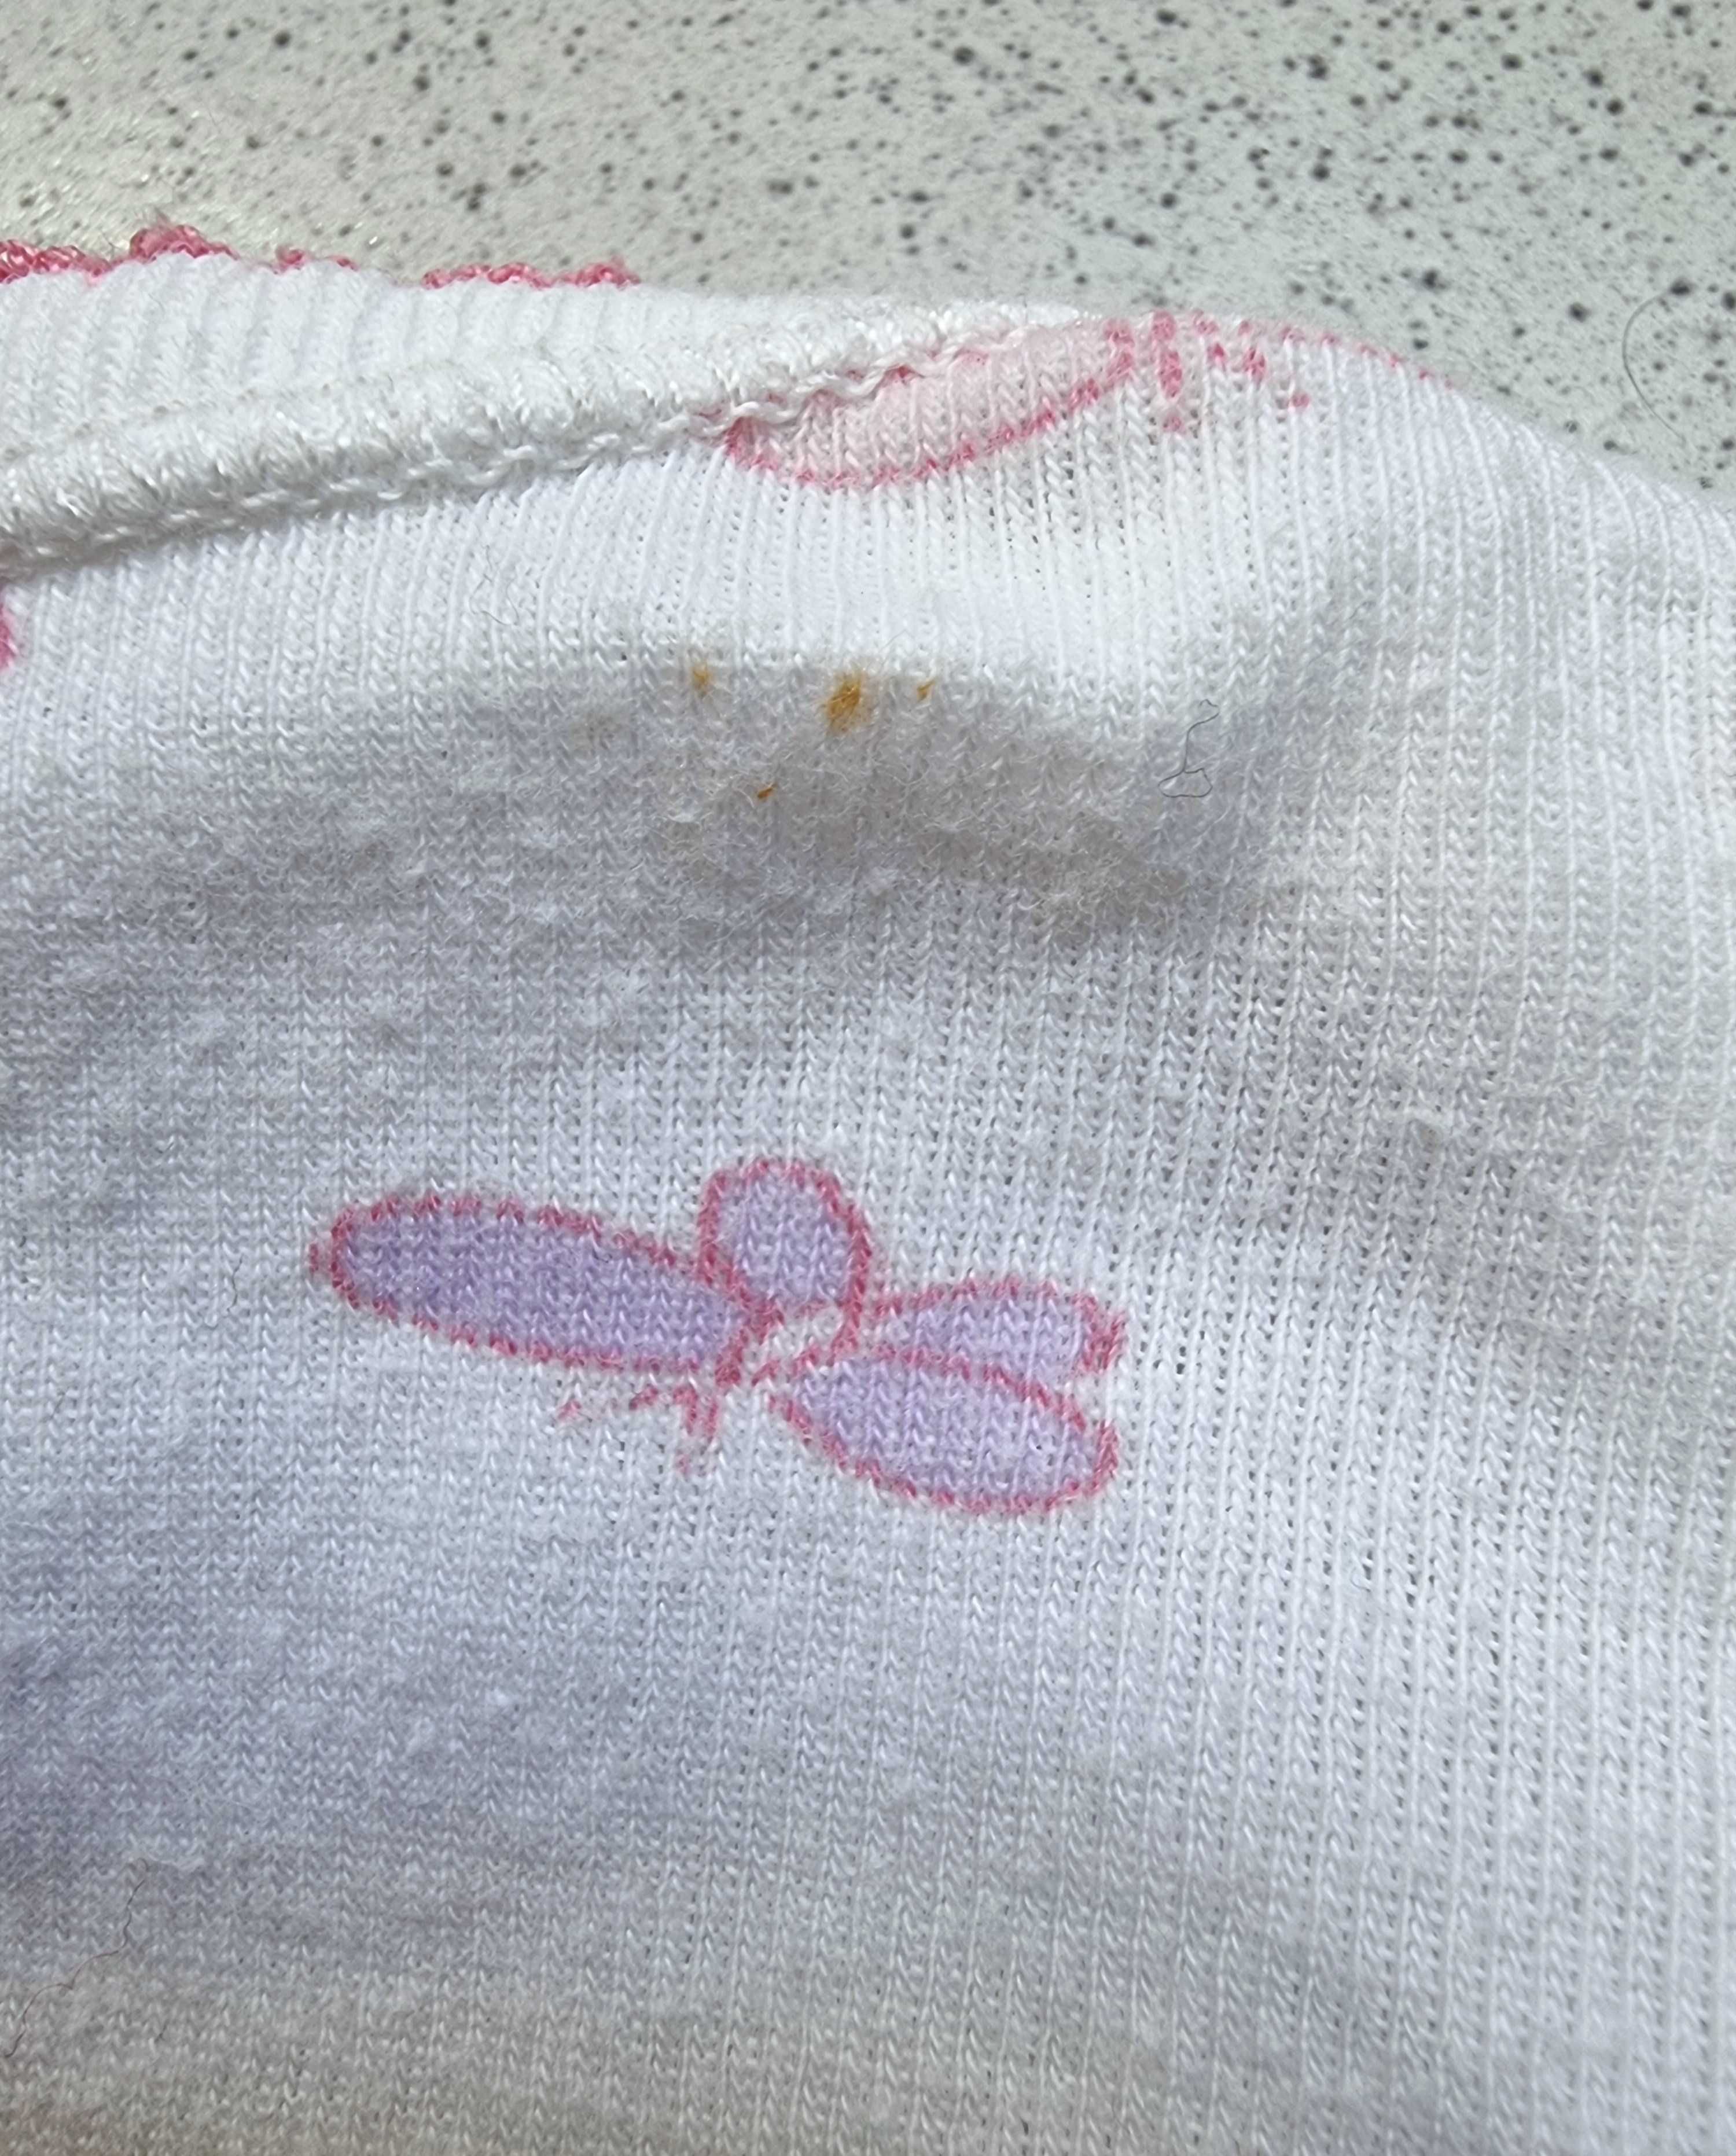 Camisola branca com borboletas rosa 100% algodão, 3 meses